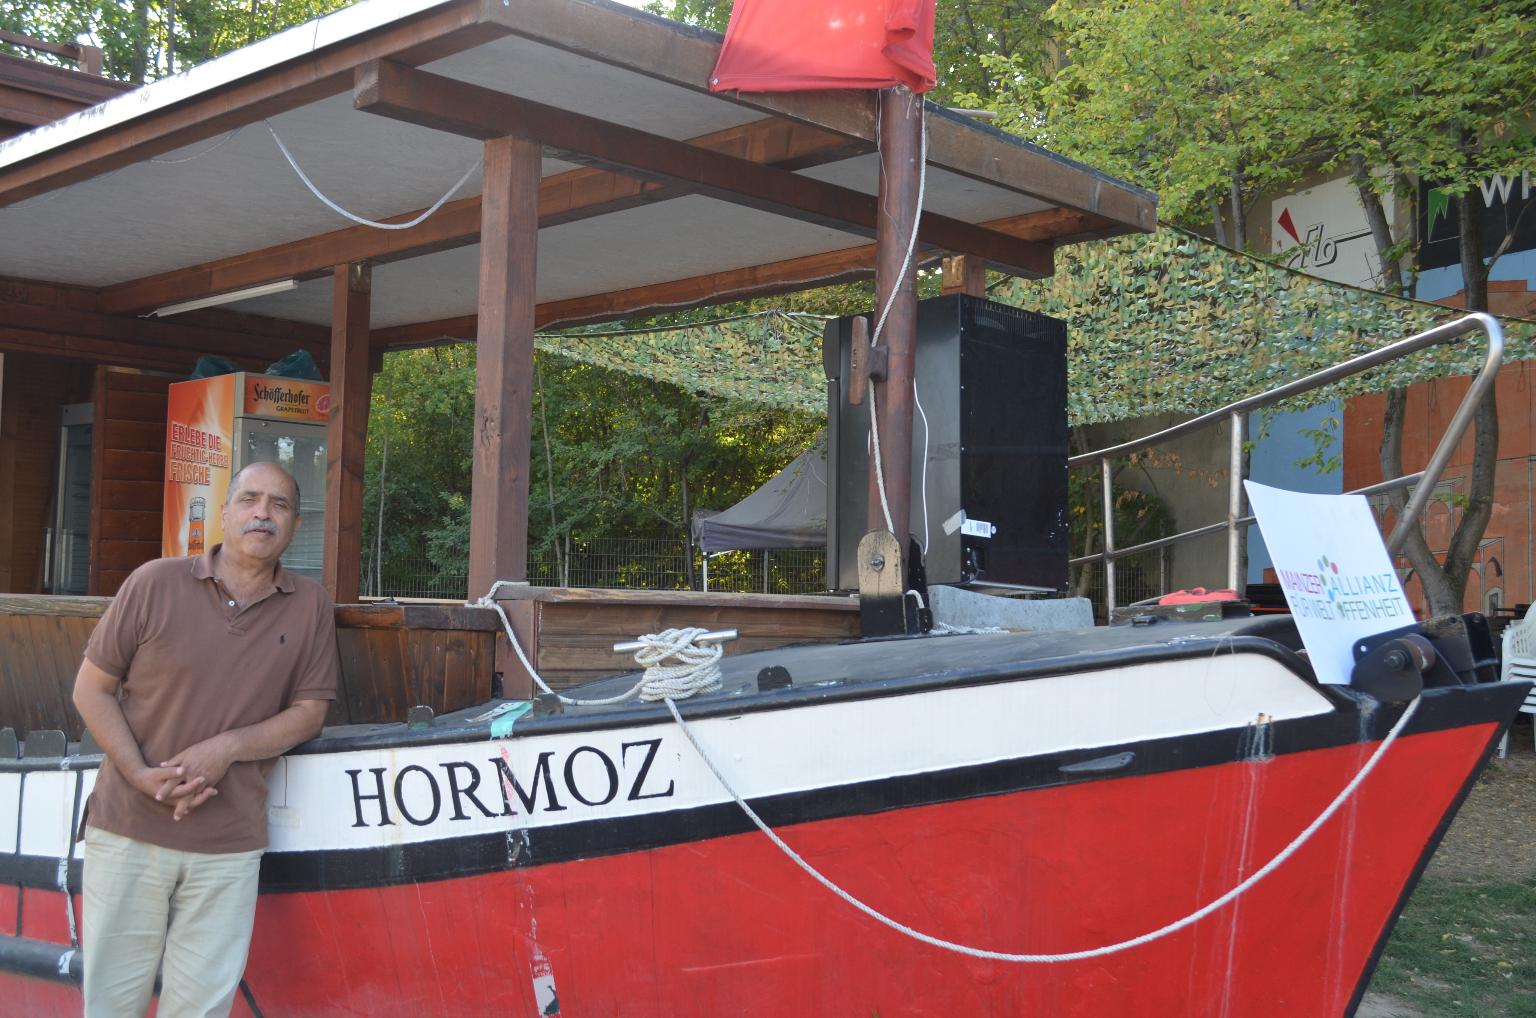 Behrouz Asadi vor dem ausrangierten Rheinschiff, das im Freigelände des „Hauses der Kulturen“ für den Getränkeausschank genutzt wird. Es ist nach seinem verstorbenen Bruder Hormoz benannt. (c) Maria Weissenberger